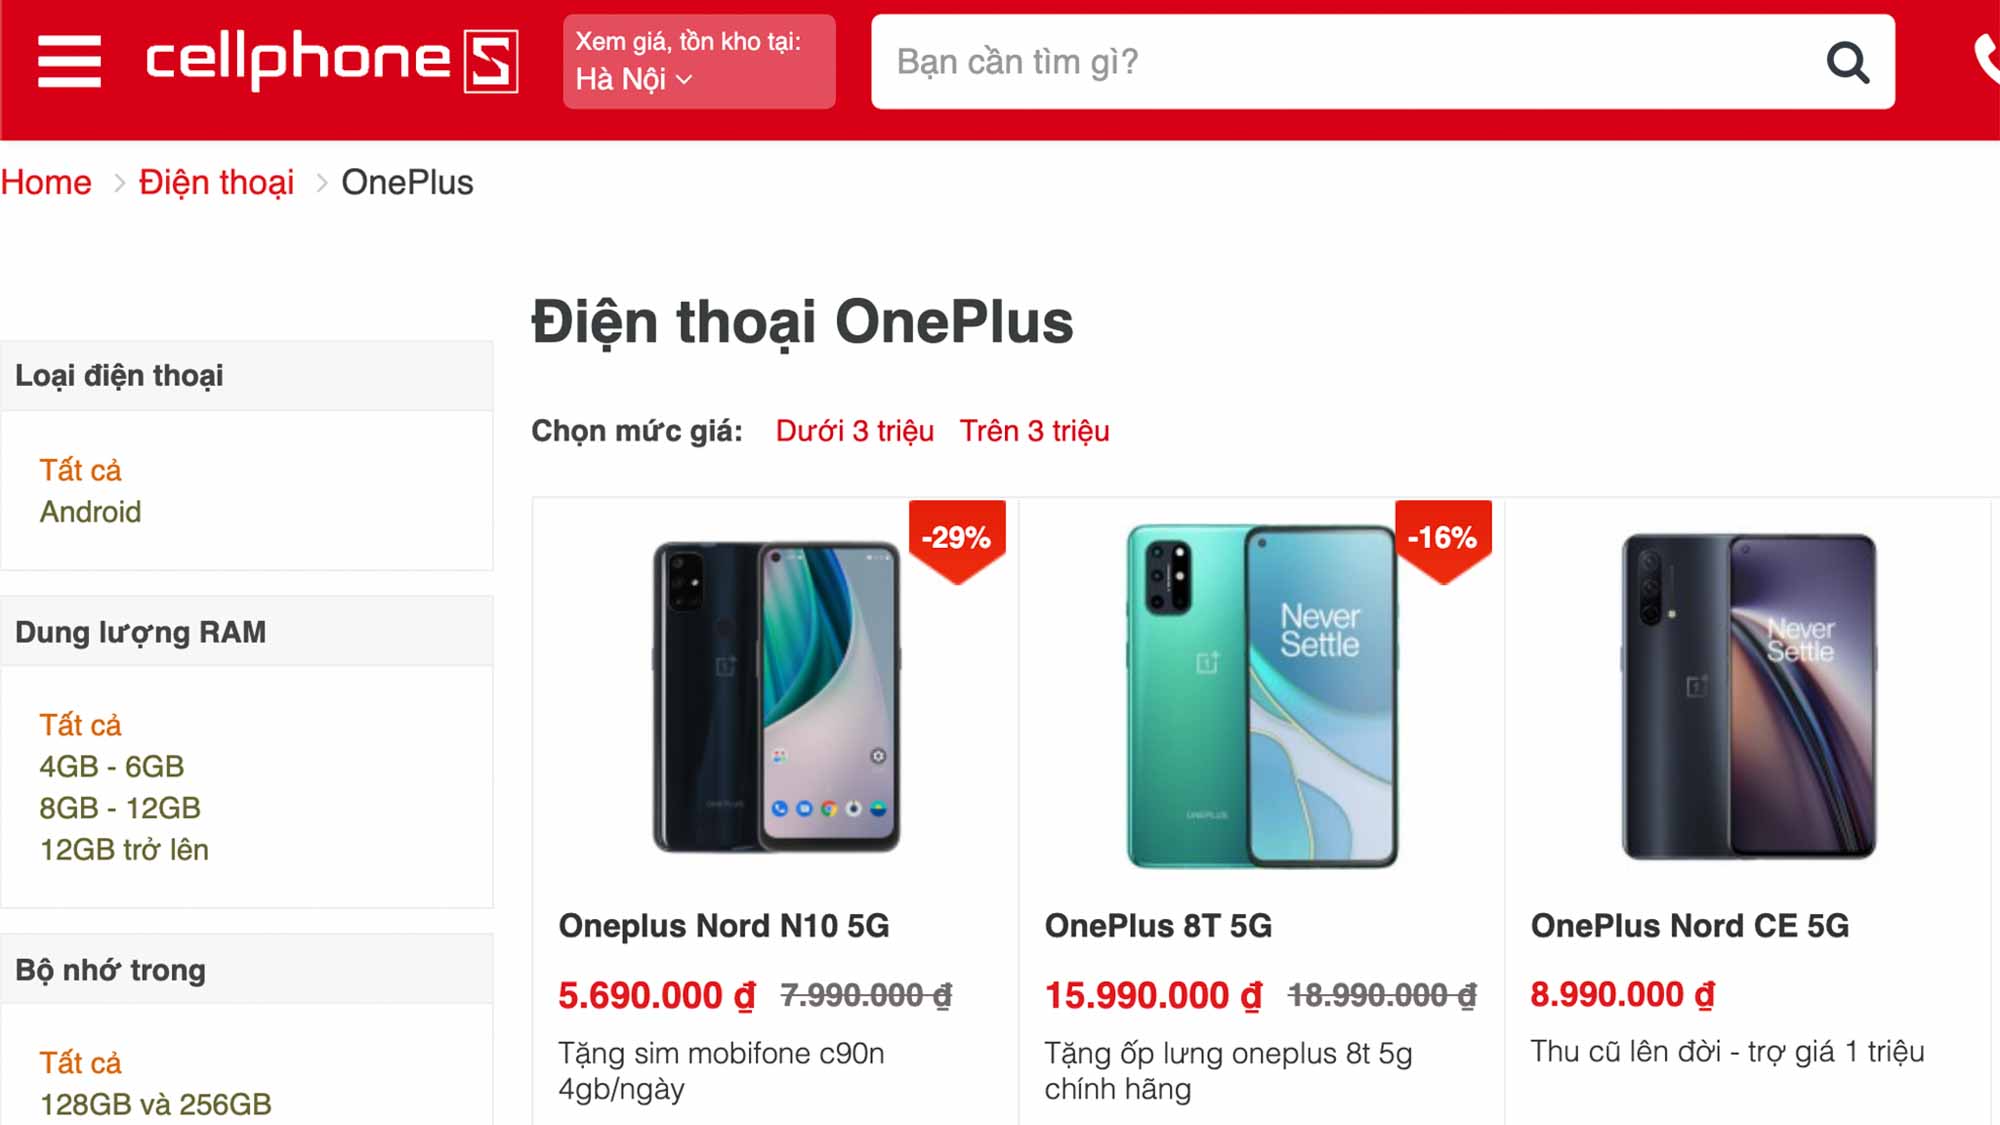 CellphoneS mở bán loạt smartphone OnePlus, nhiều ưu đãi quà tặng độc quyền